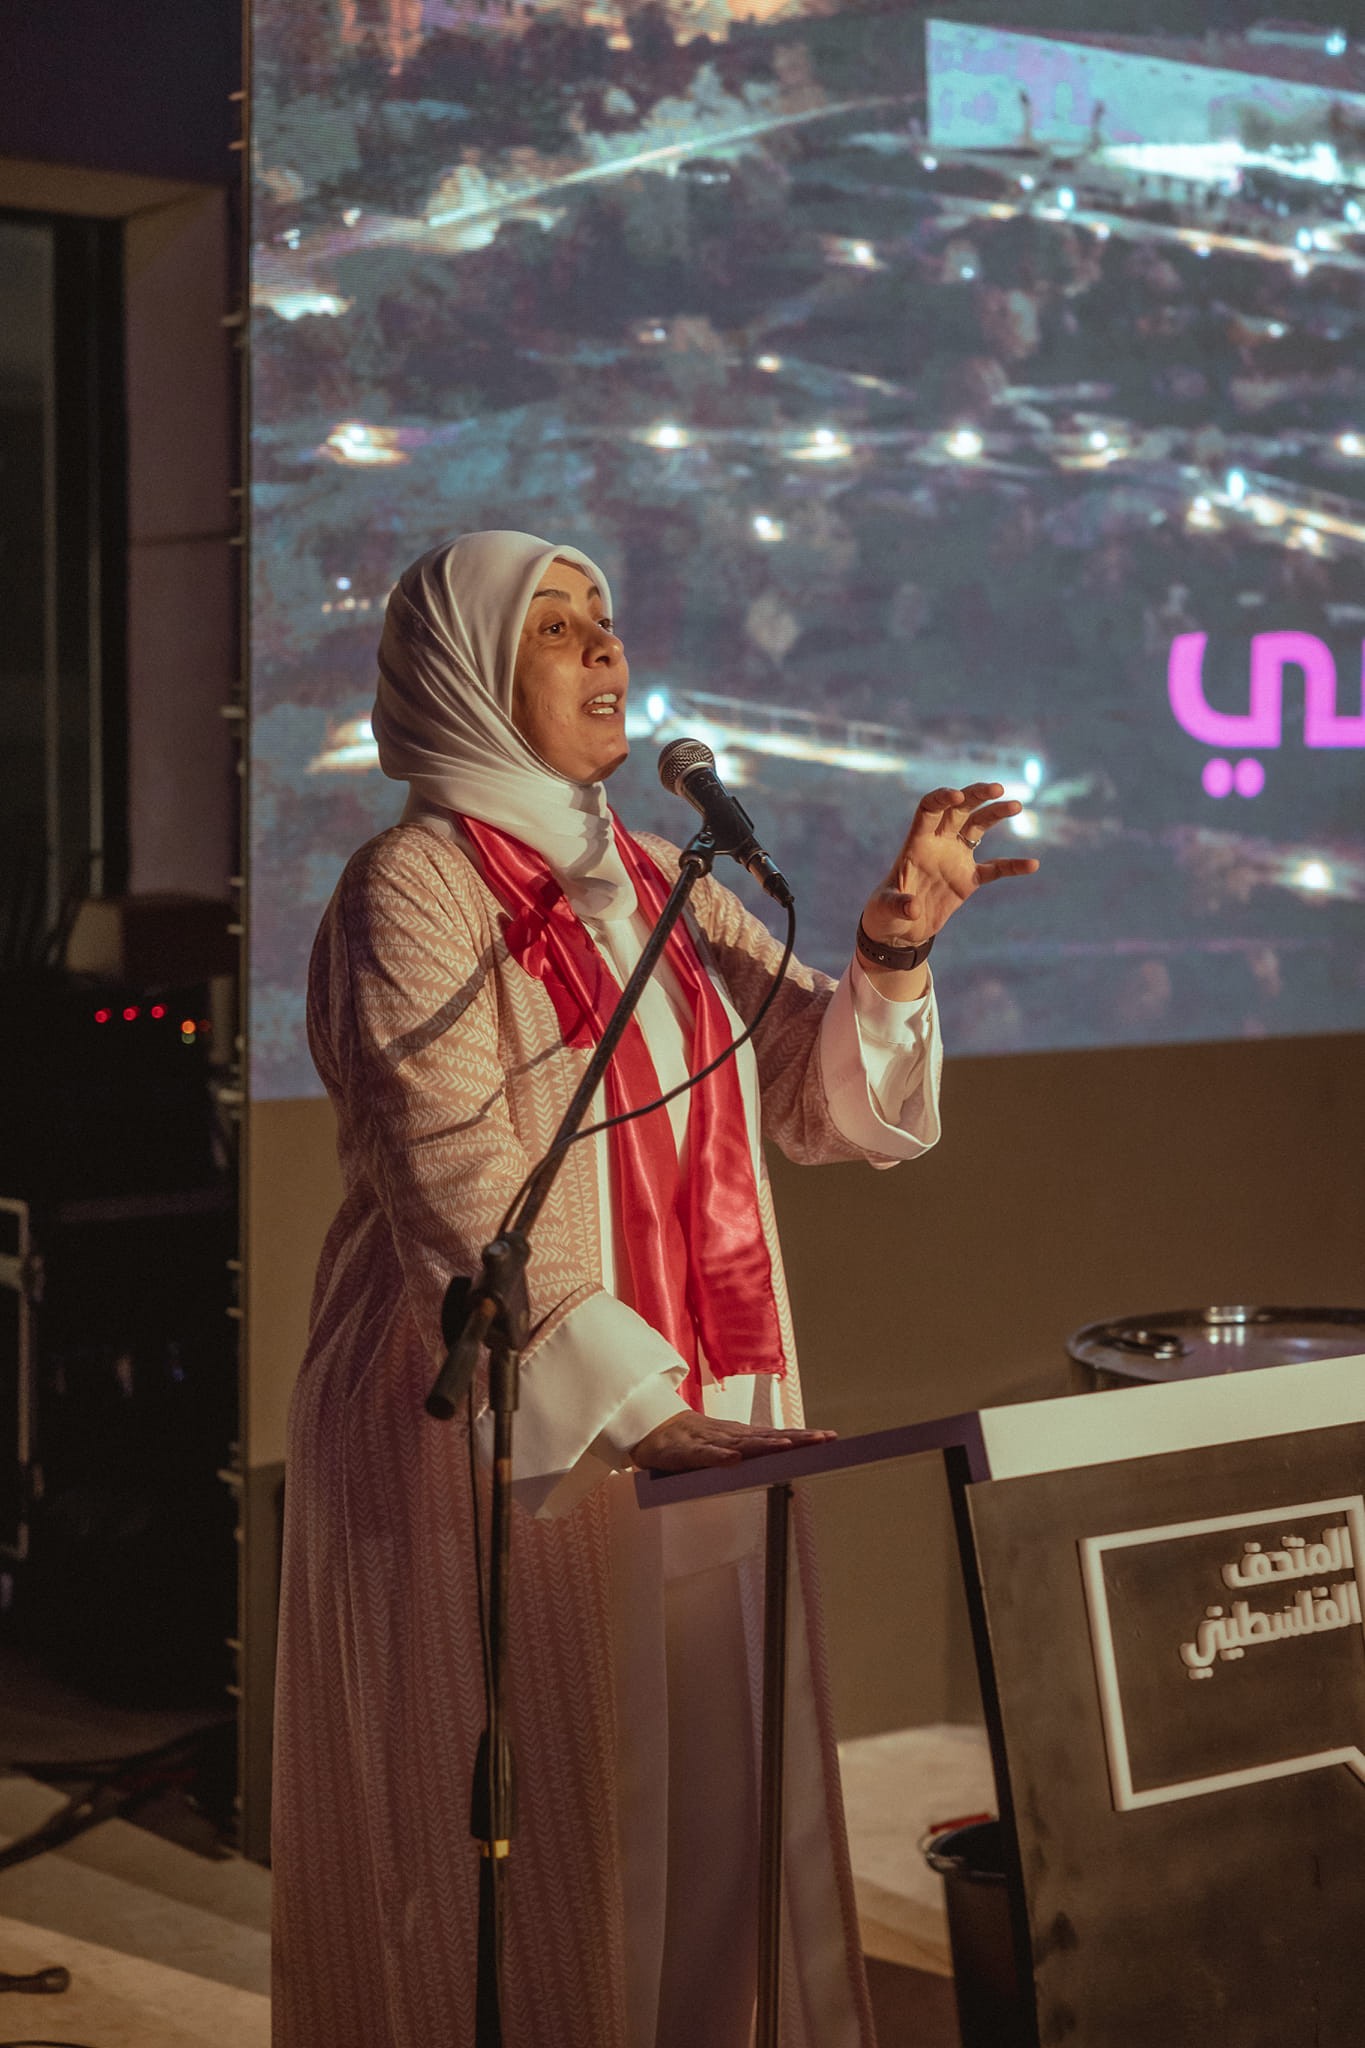 مؤسسة مريم لمكافحة السرطان تضيء سماء فلسطين في اللون الزهري بمناسبة اكتوبر زهر.jpg